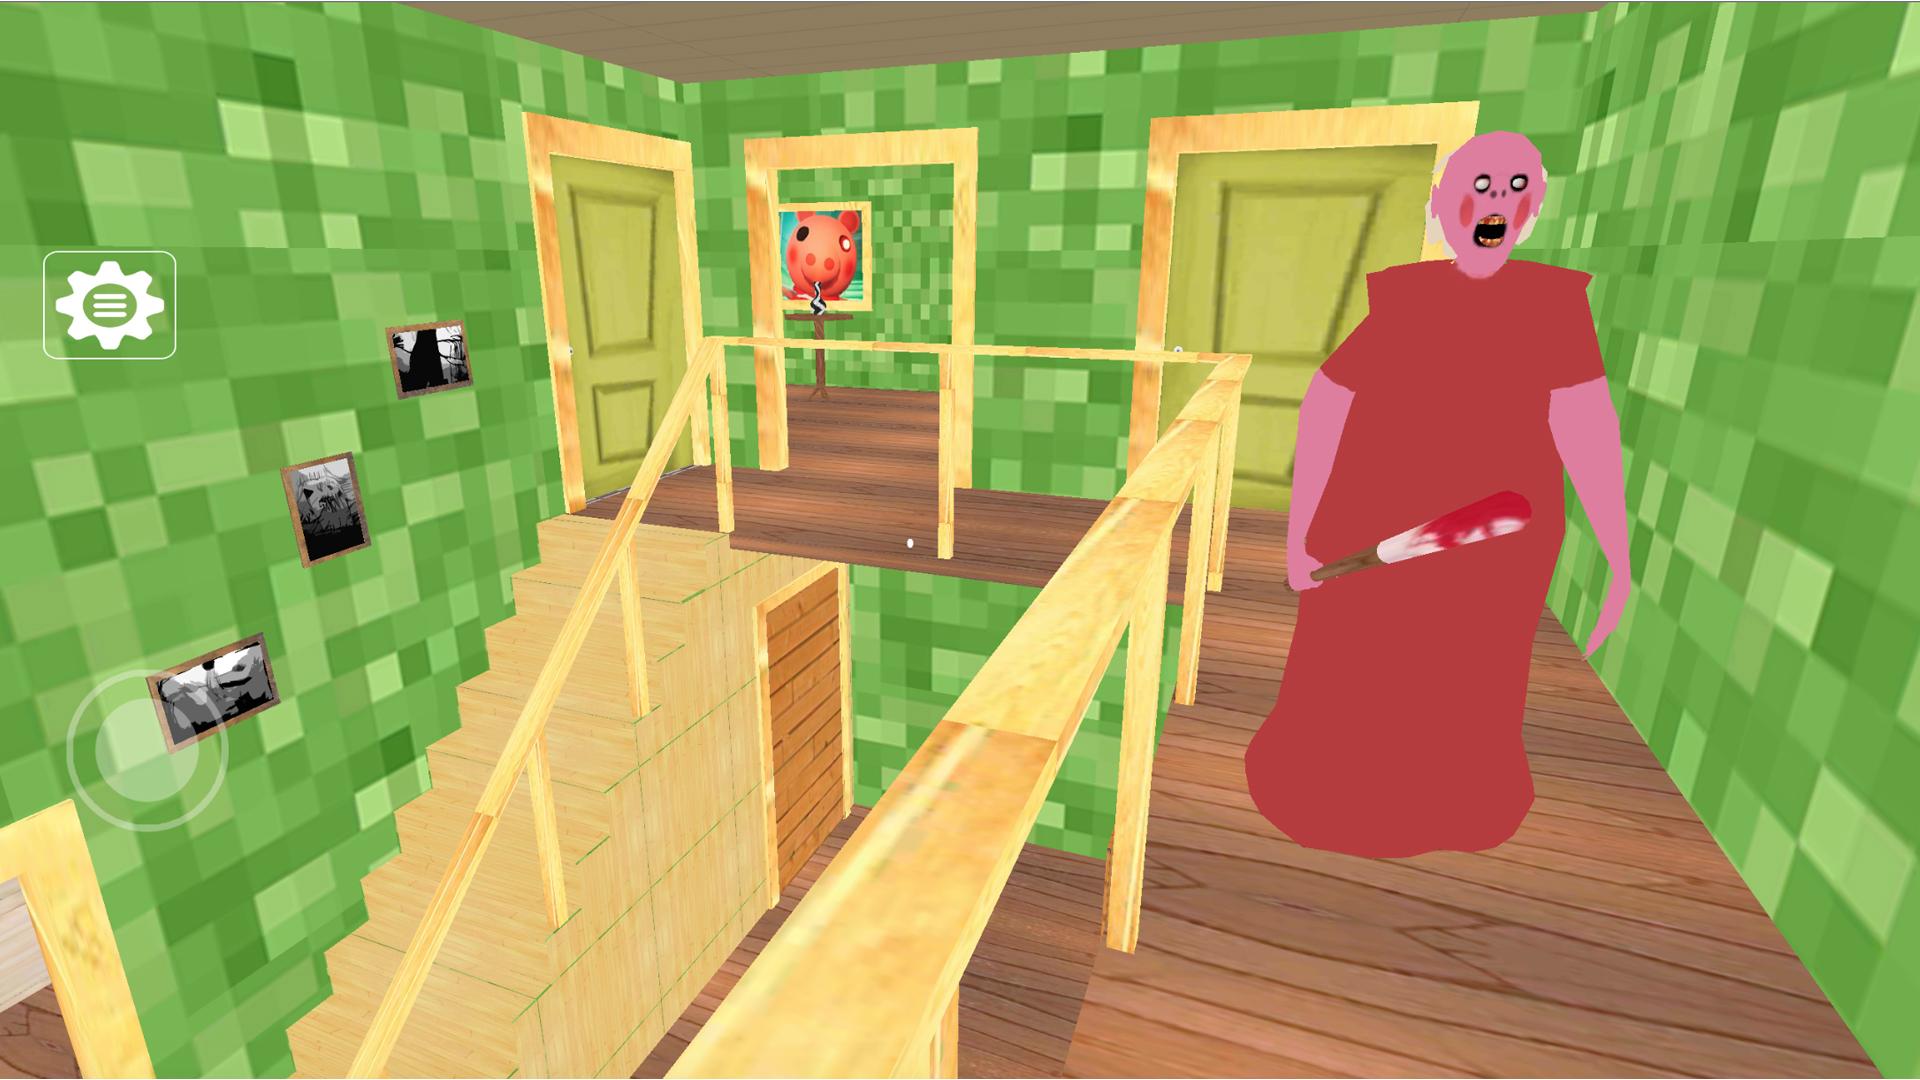 Scary Piggy Granny Roblx Mod 2.0 Free Download